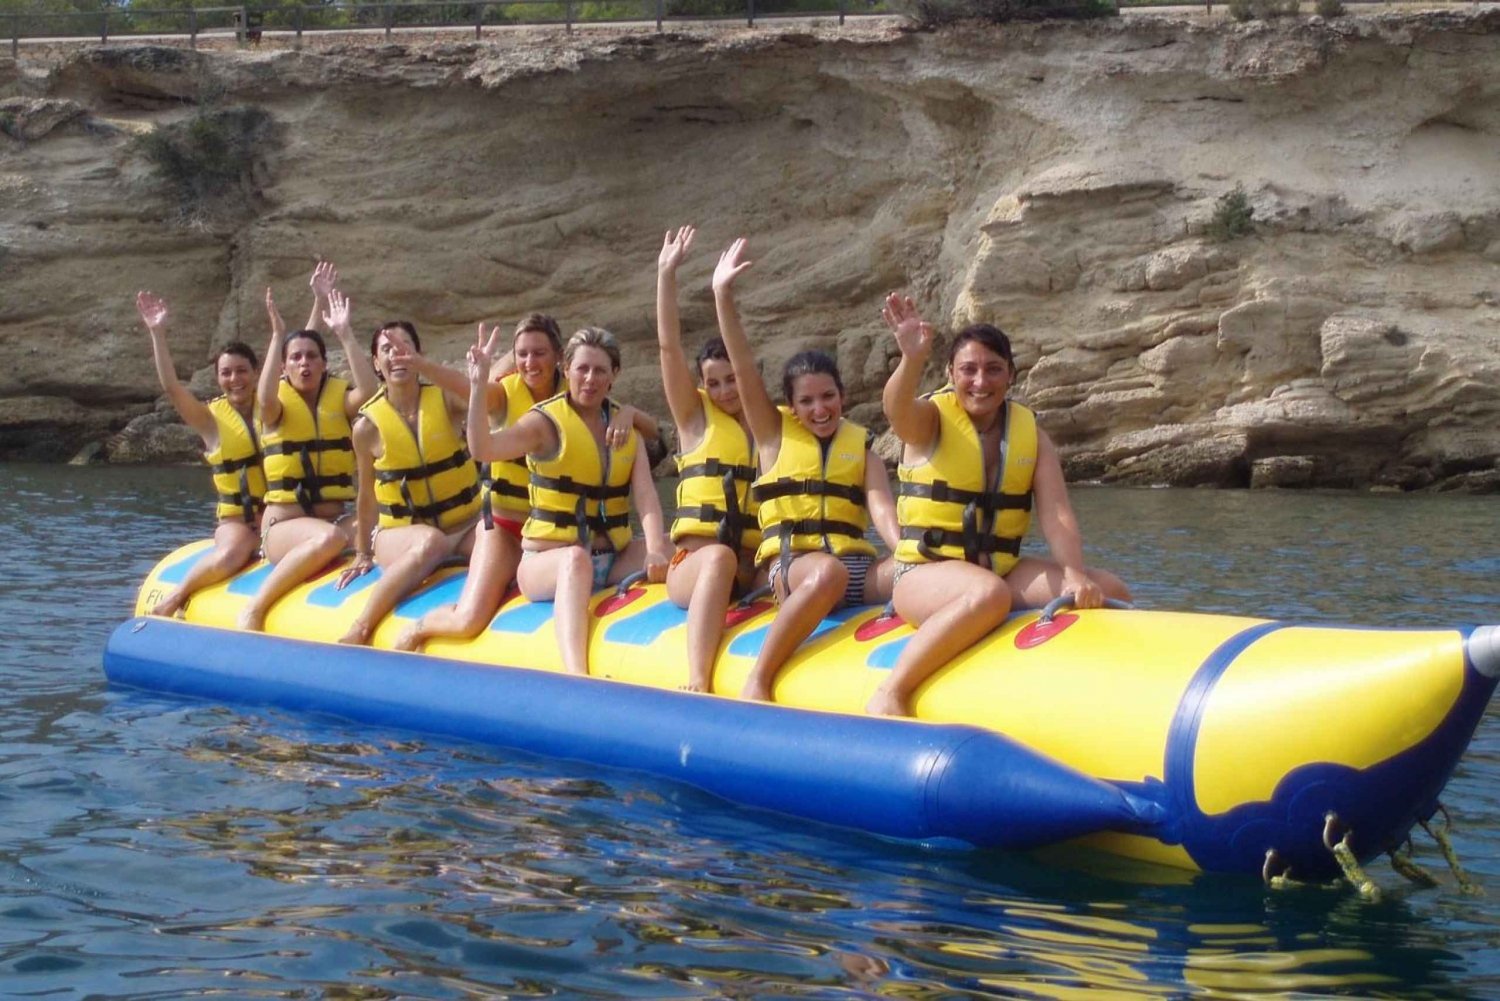 Ibiza: Banana Boat. Rent adrenalin